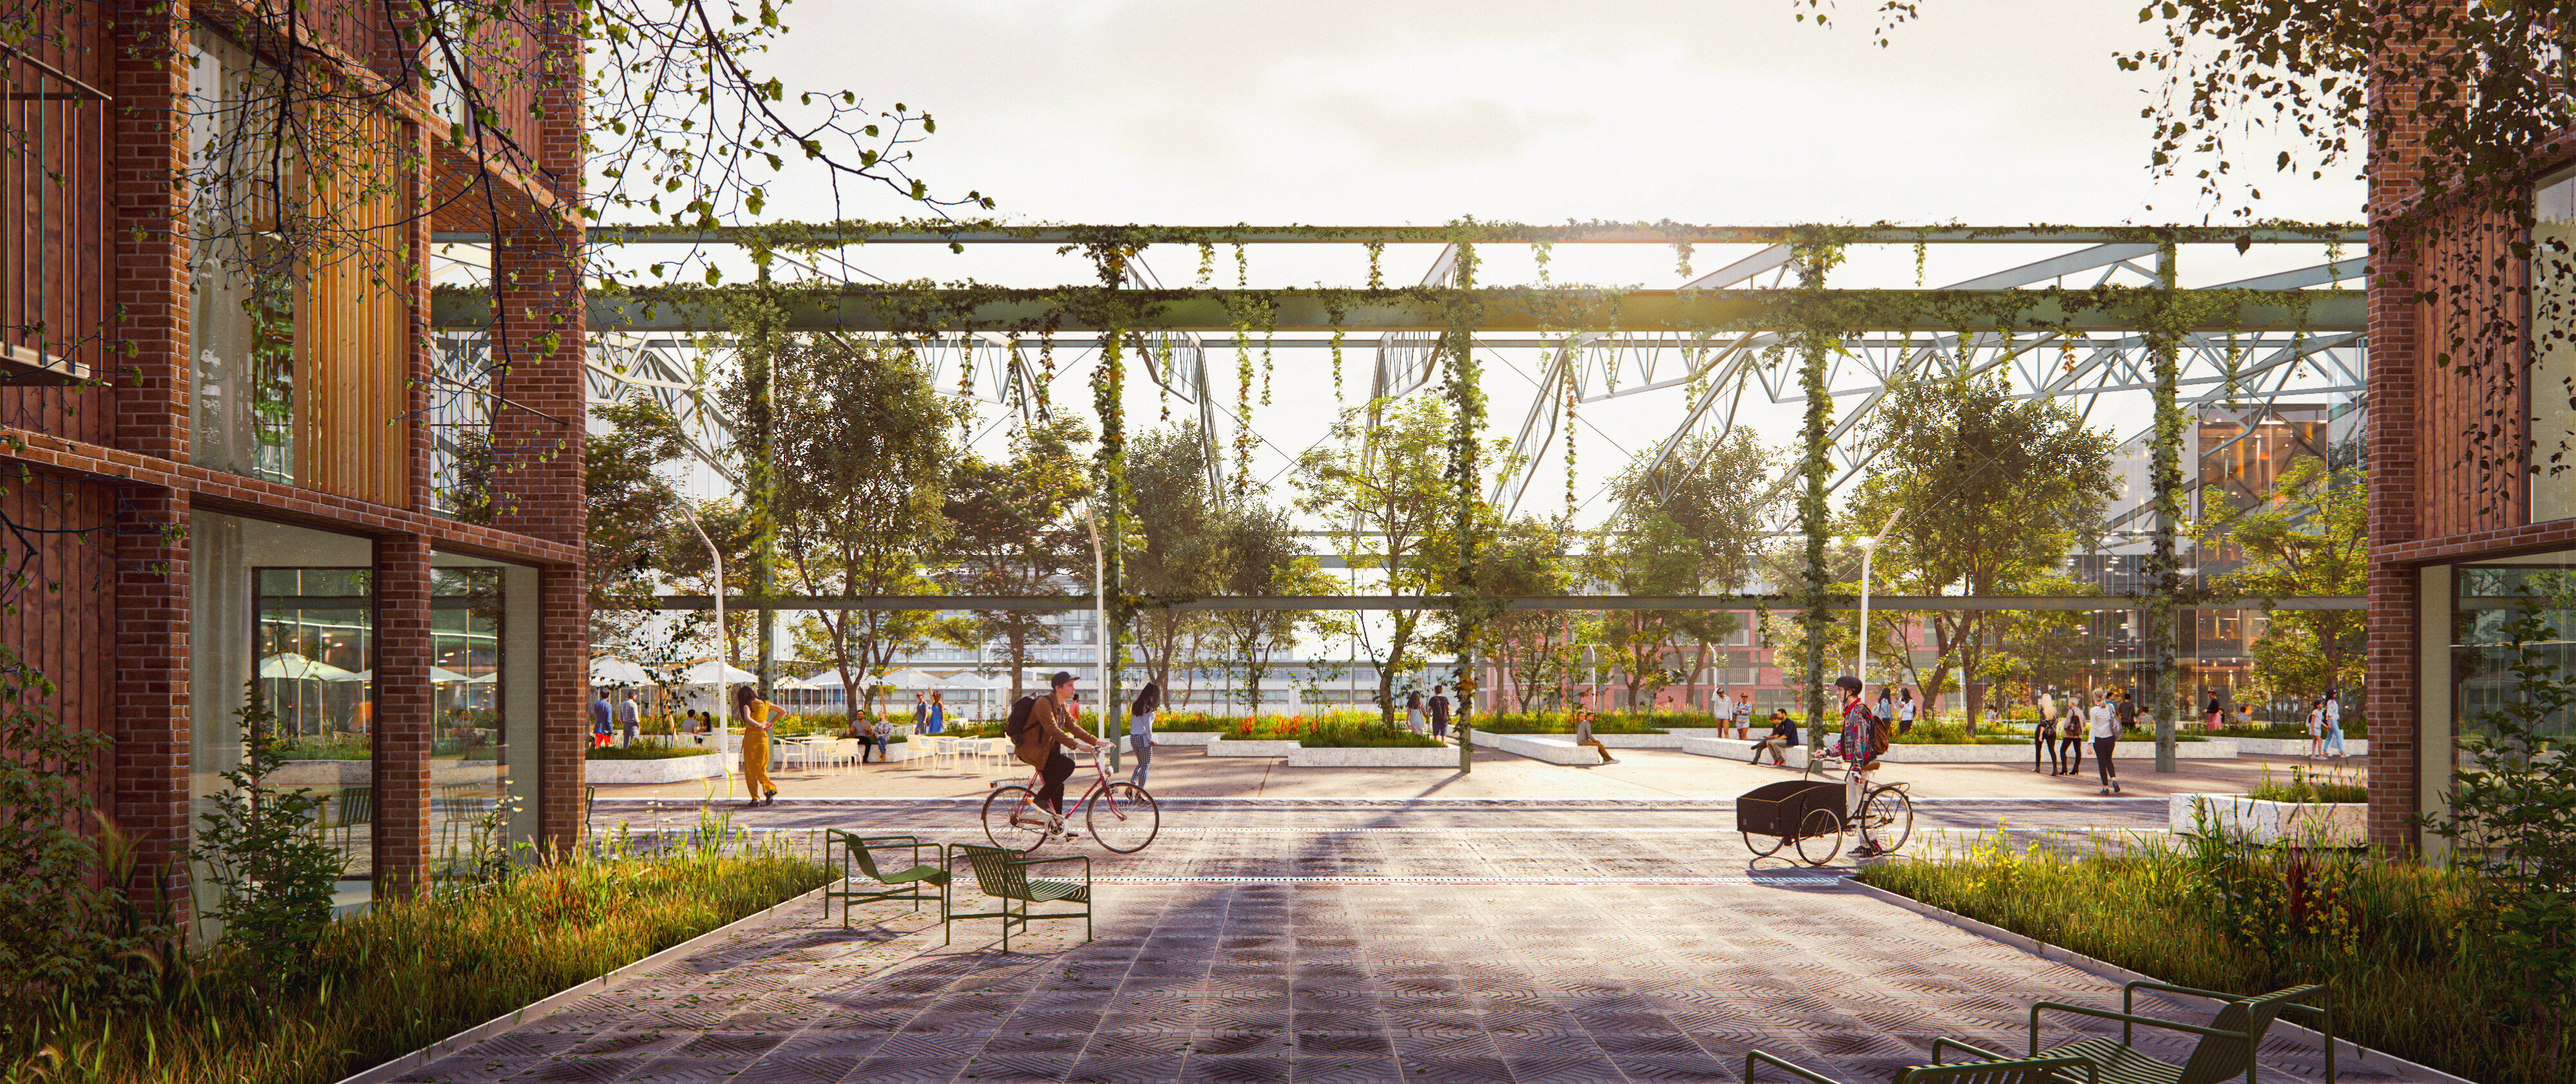 Abbildung des zukünftigen Hallengartens im neuen Stadtteil Werftquartier | © Cobe